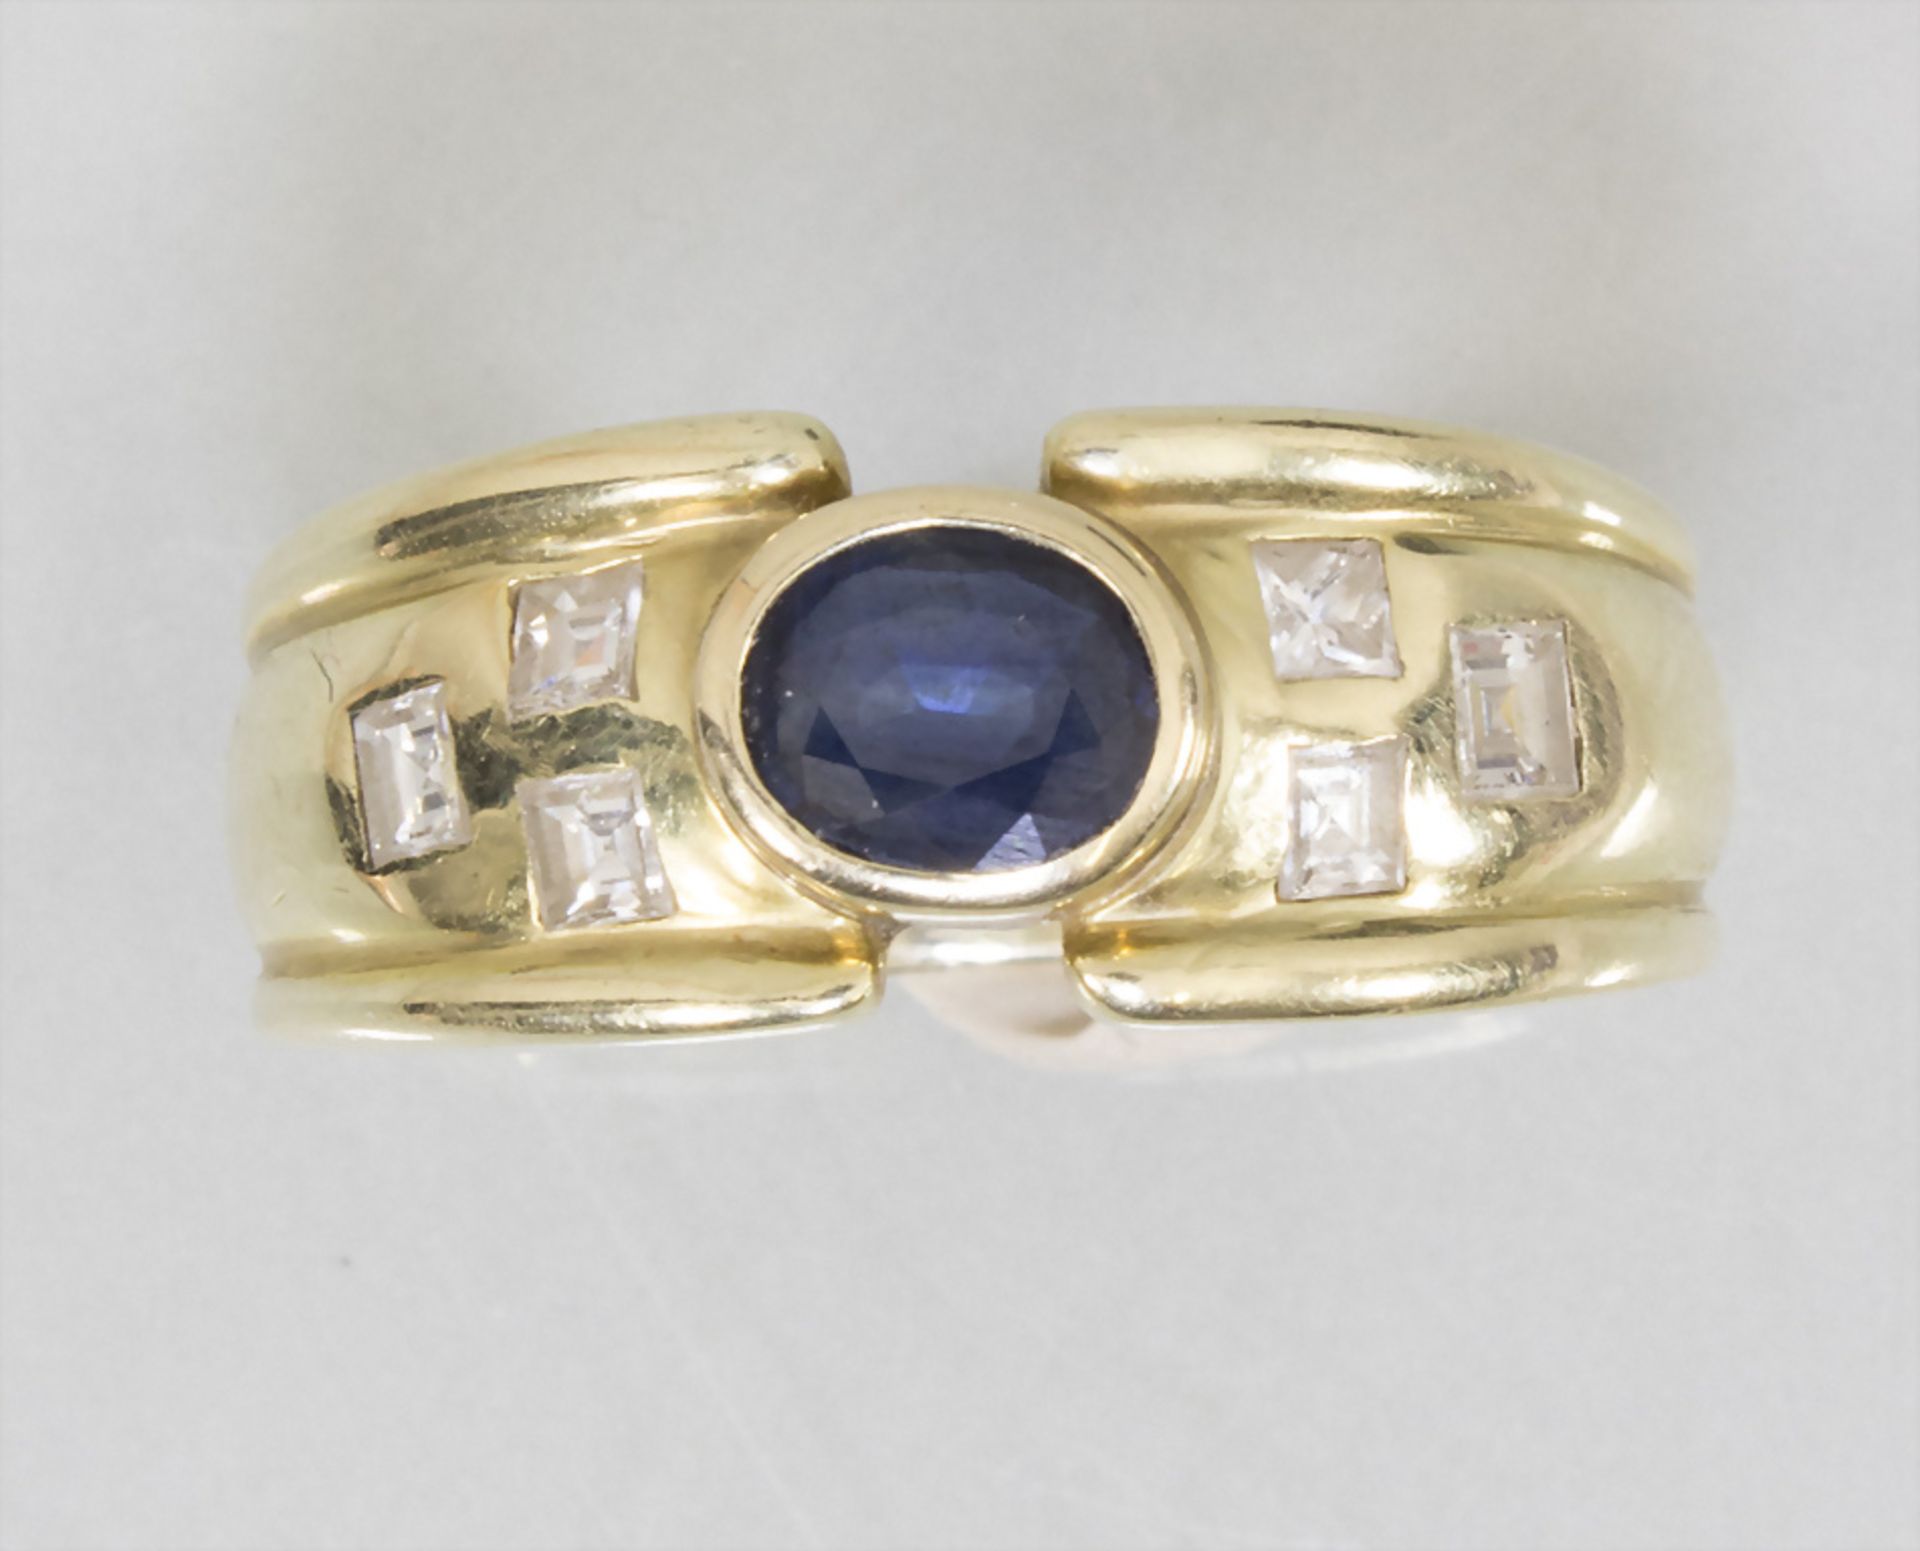 Damenring mit Saphir und Diamanten / A ladies 14k gold ring with sapphire and diamonds